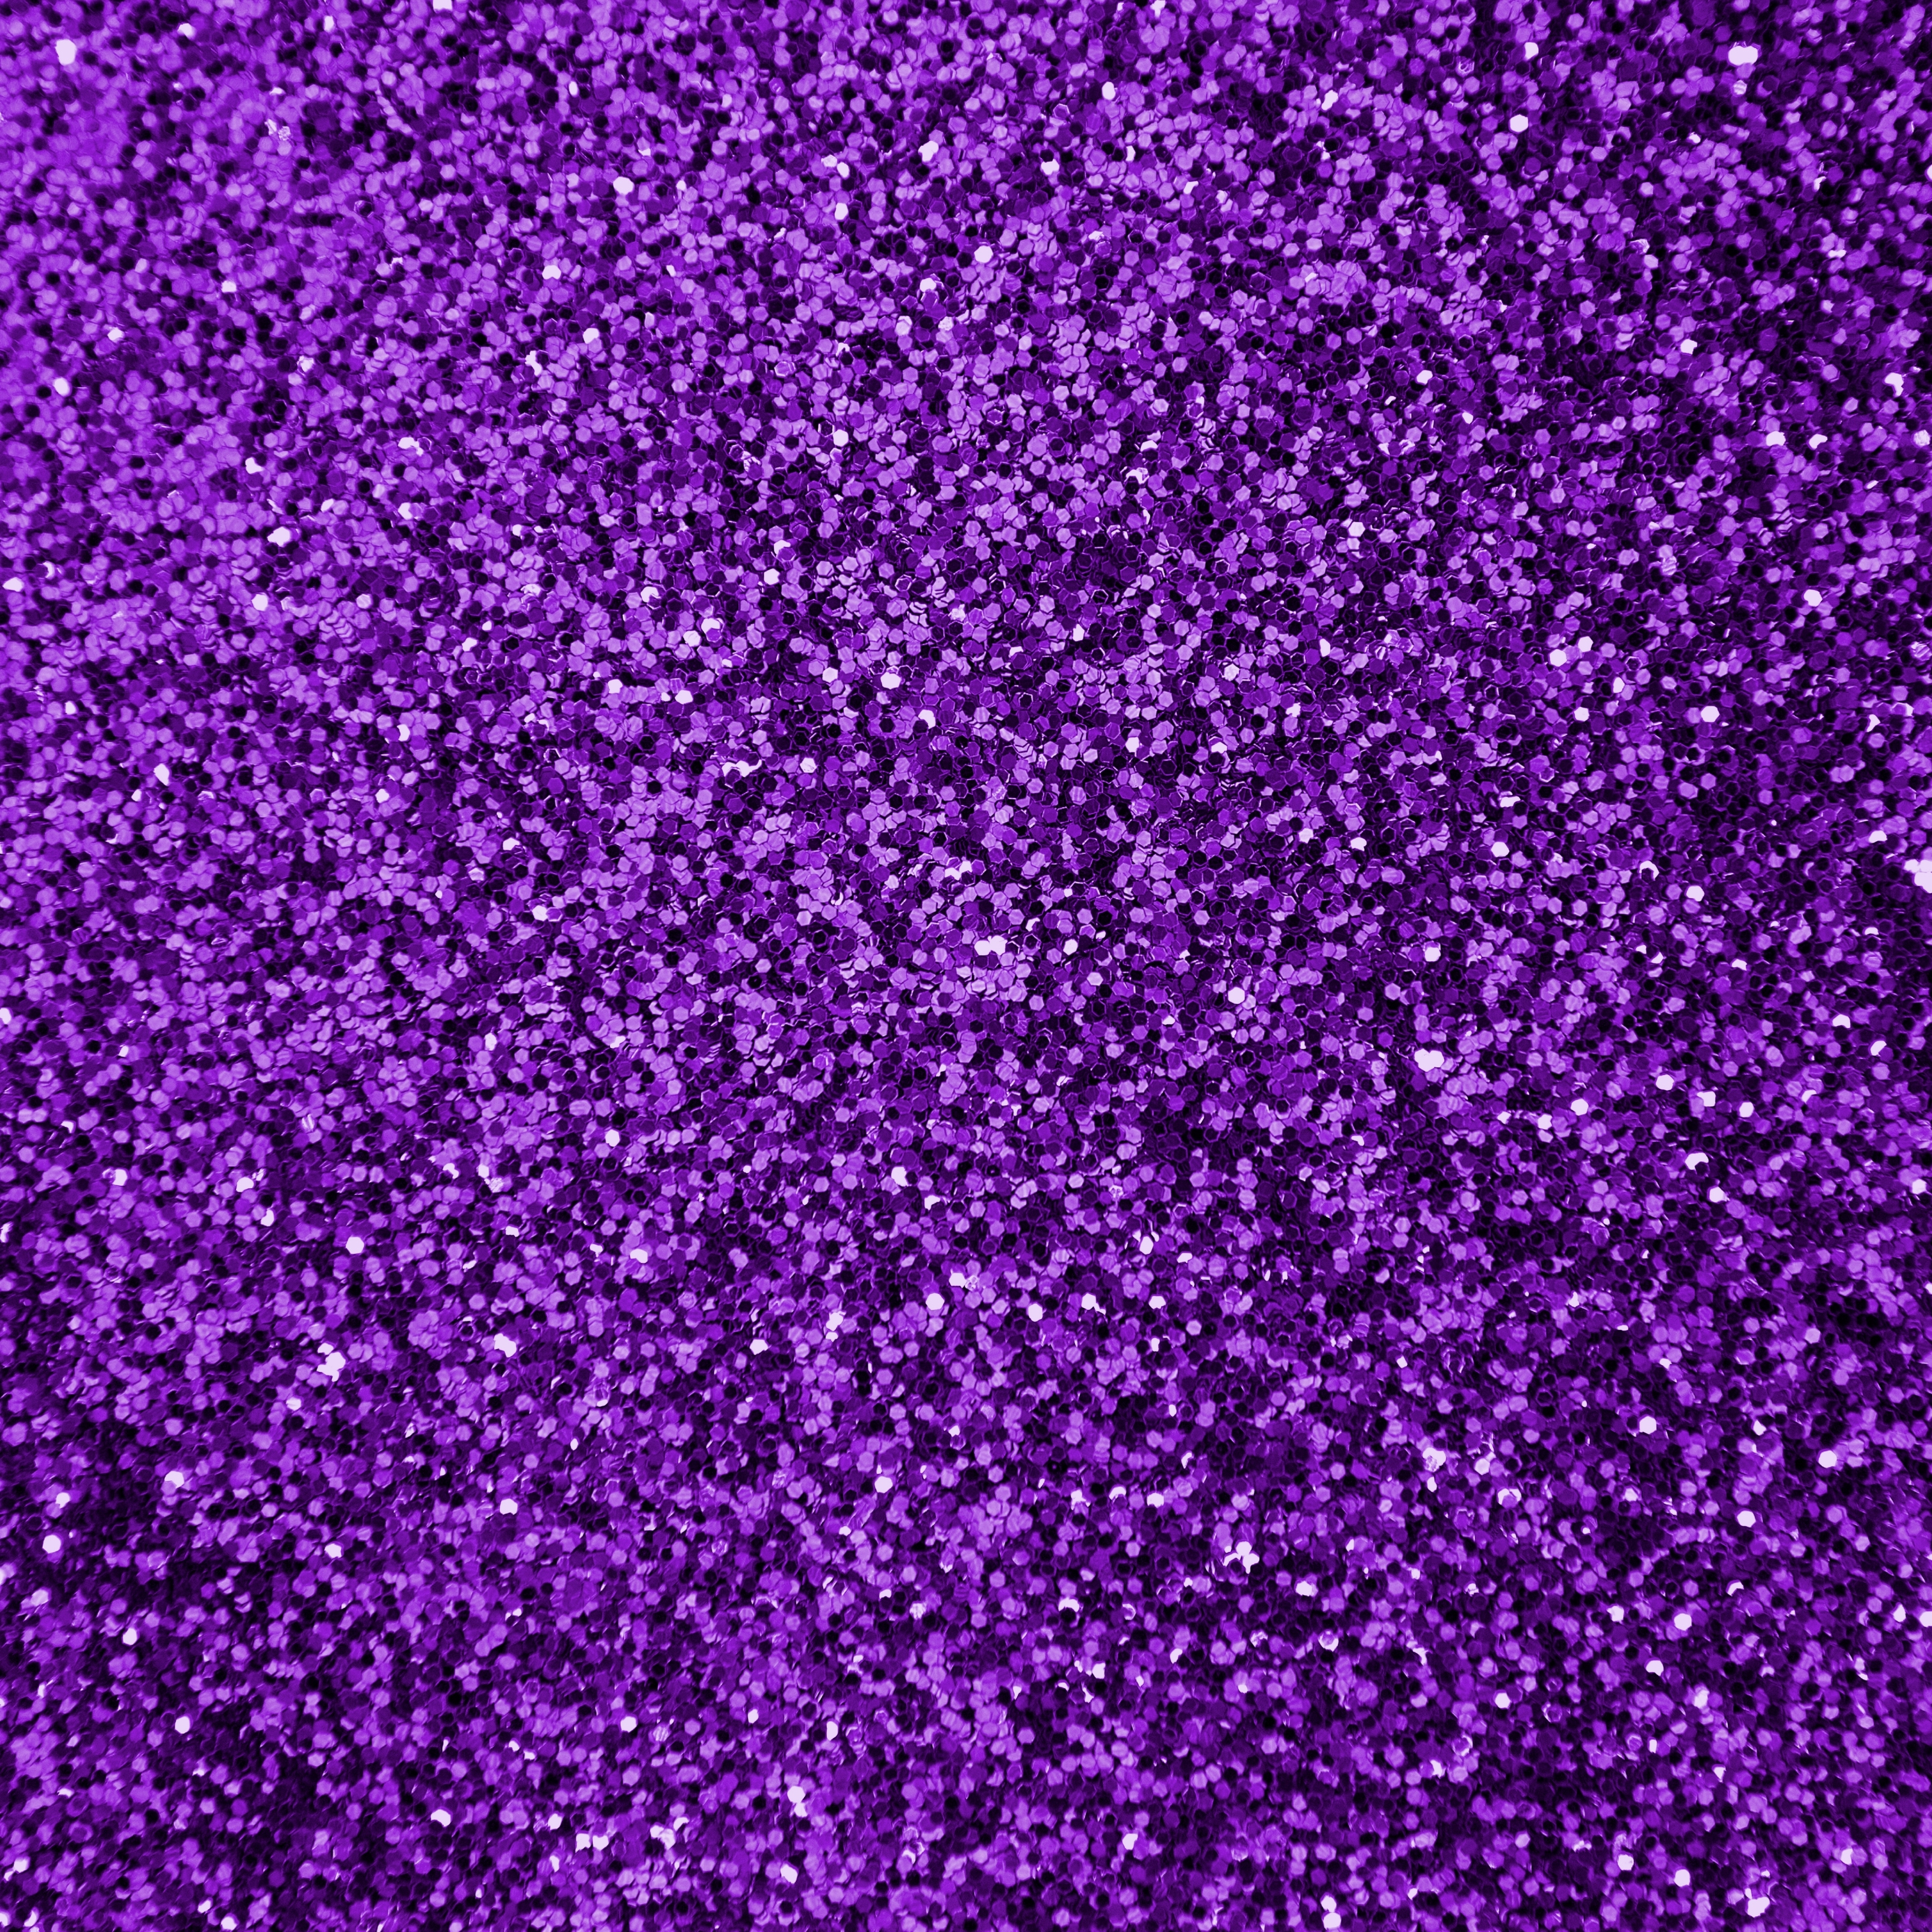 iPad Wallpapers Purple Sparkle Glitter Material iPad Wallpaper 3208x3208 px